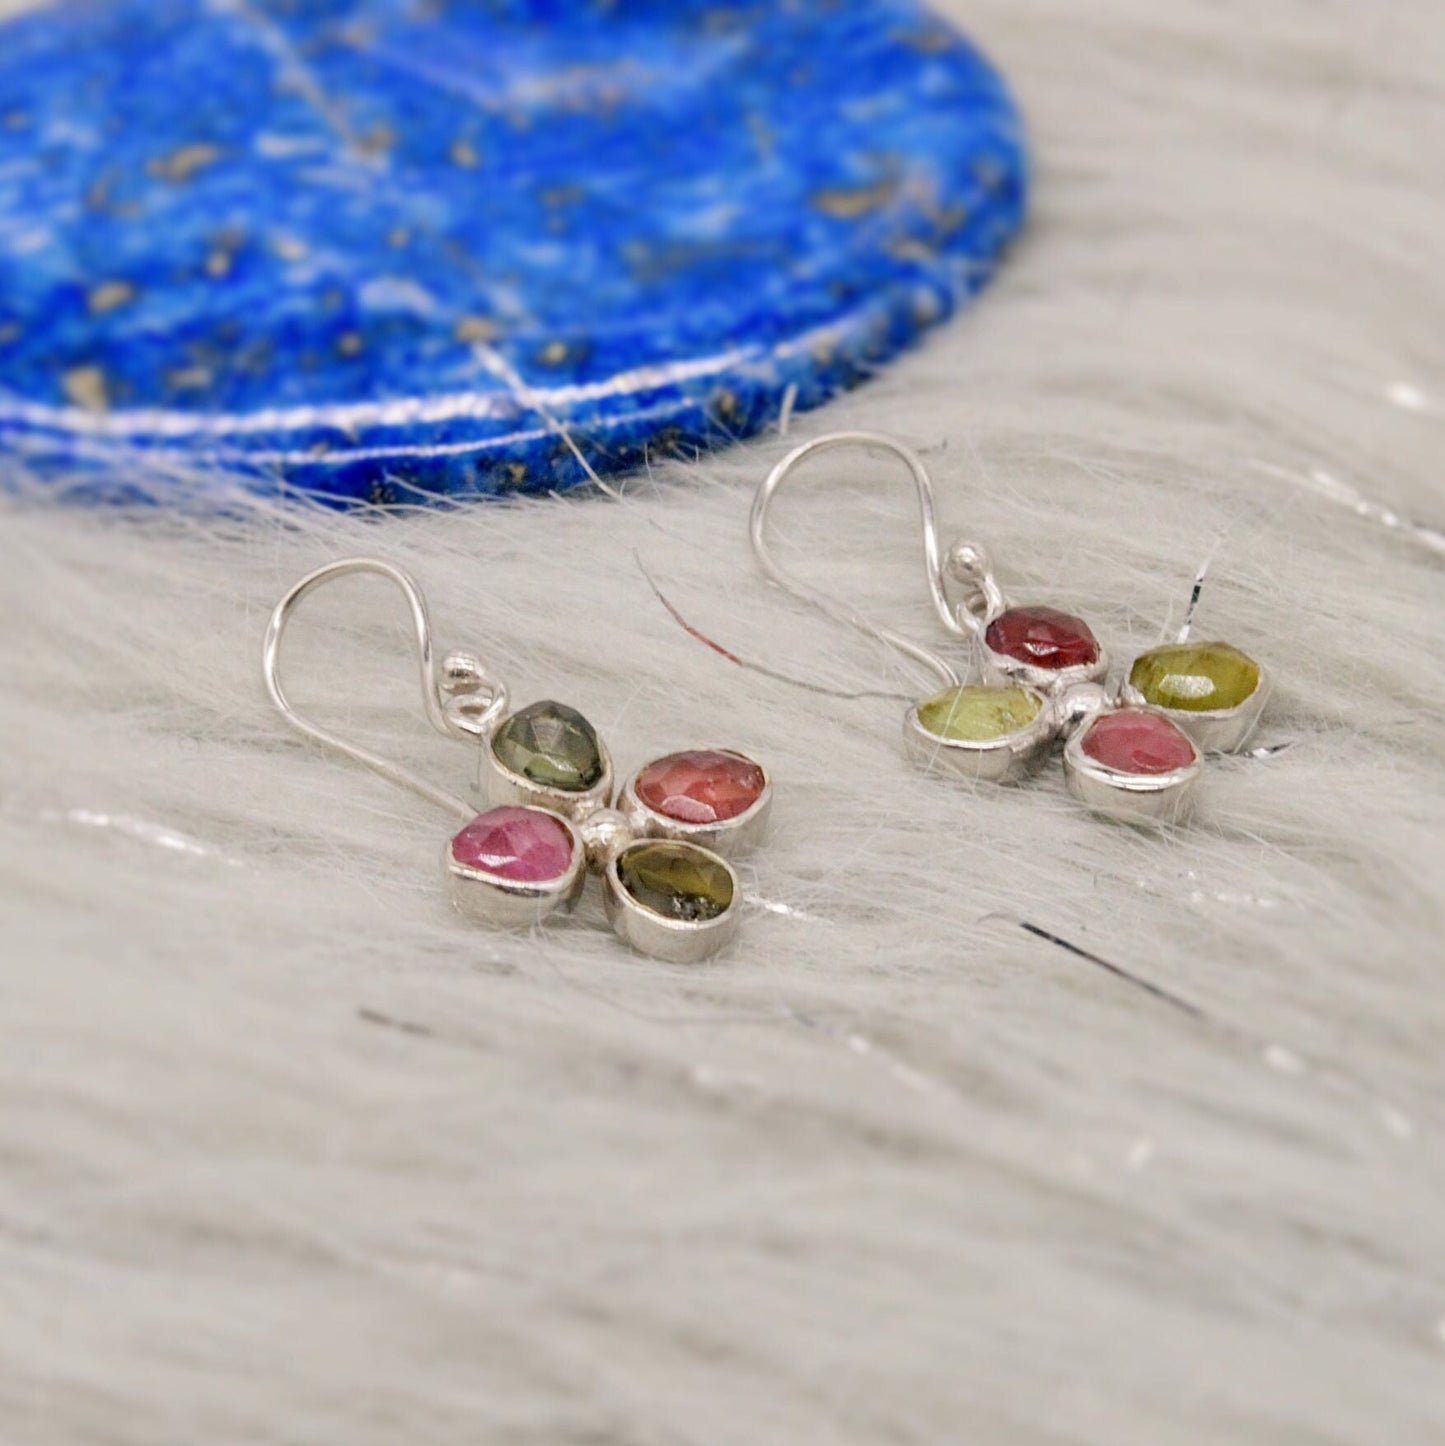 Pink Green Tourmaline Earrings, Dangle Drop Sterling Silver Earrings, October Birthstone Earrings, Tourmaline Jewelry, Cute Earrings